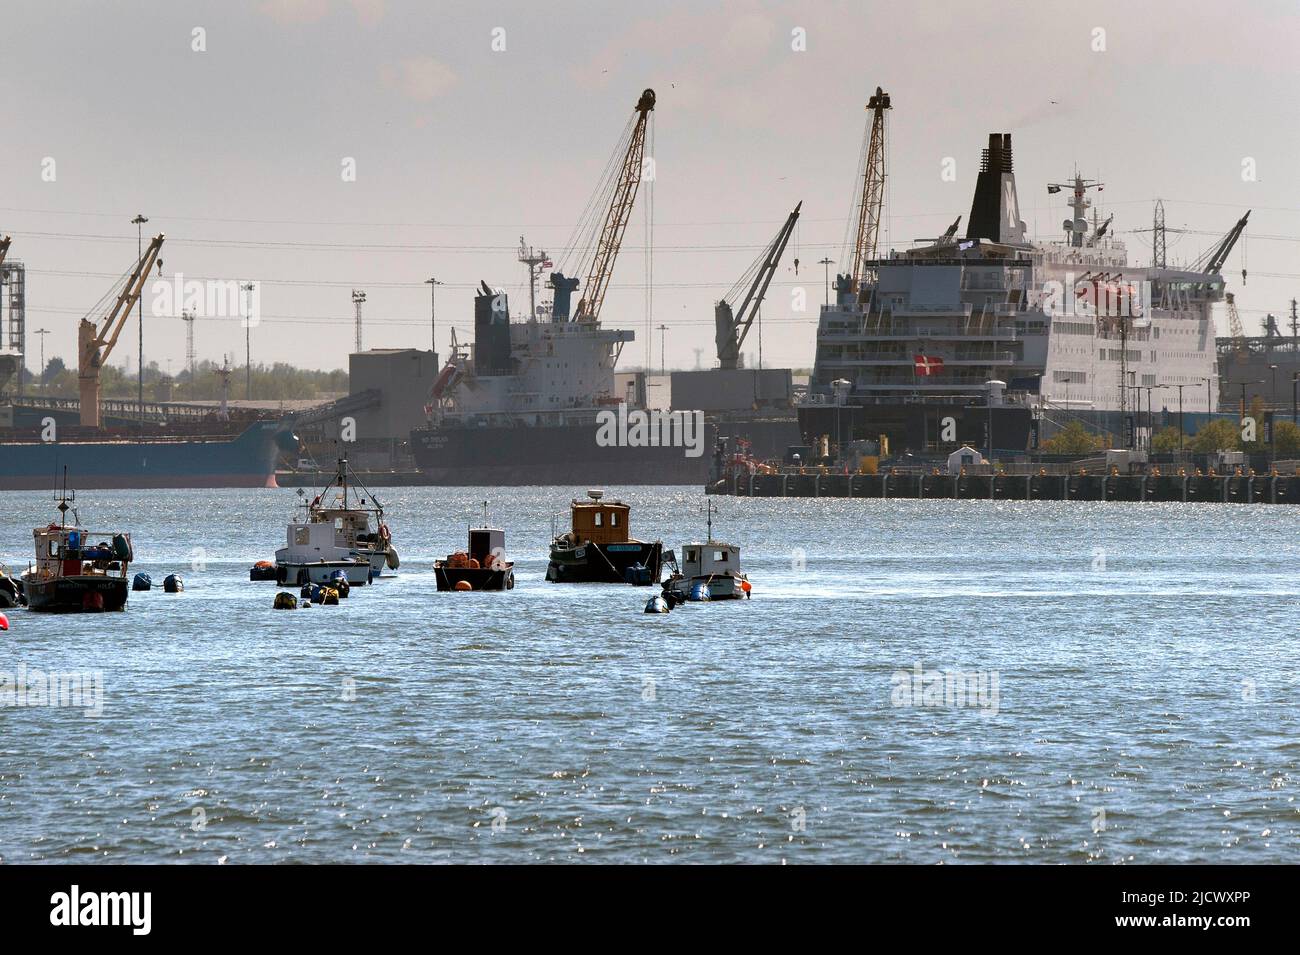 Vista de barcos de pesca, barcos de carga y ferry en el río Tyne, tomada desde el muelle de pesca North Shields Foto de stock